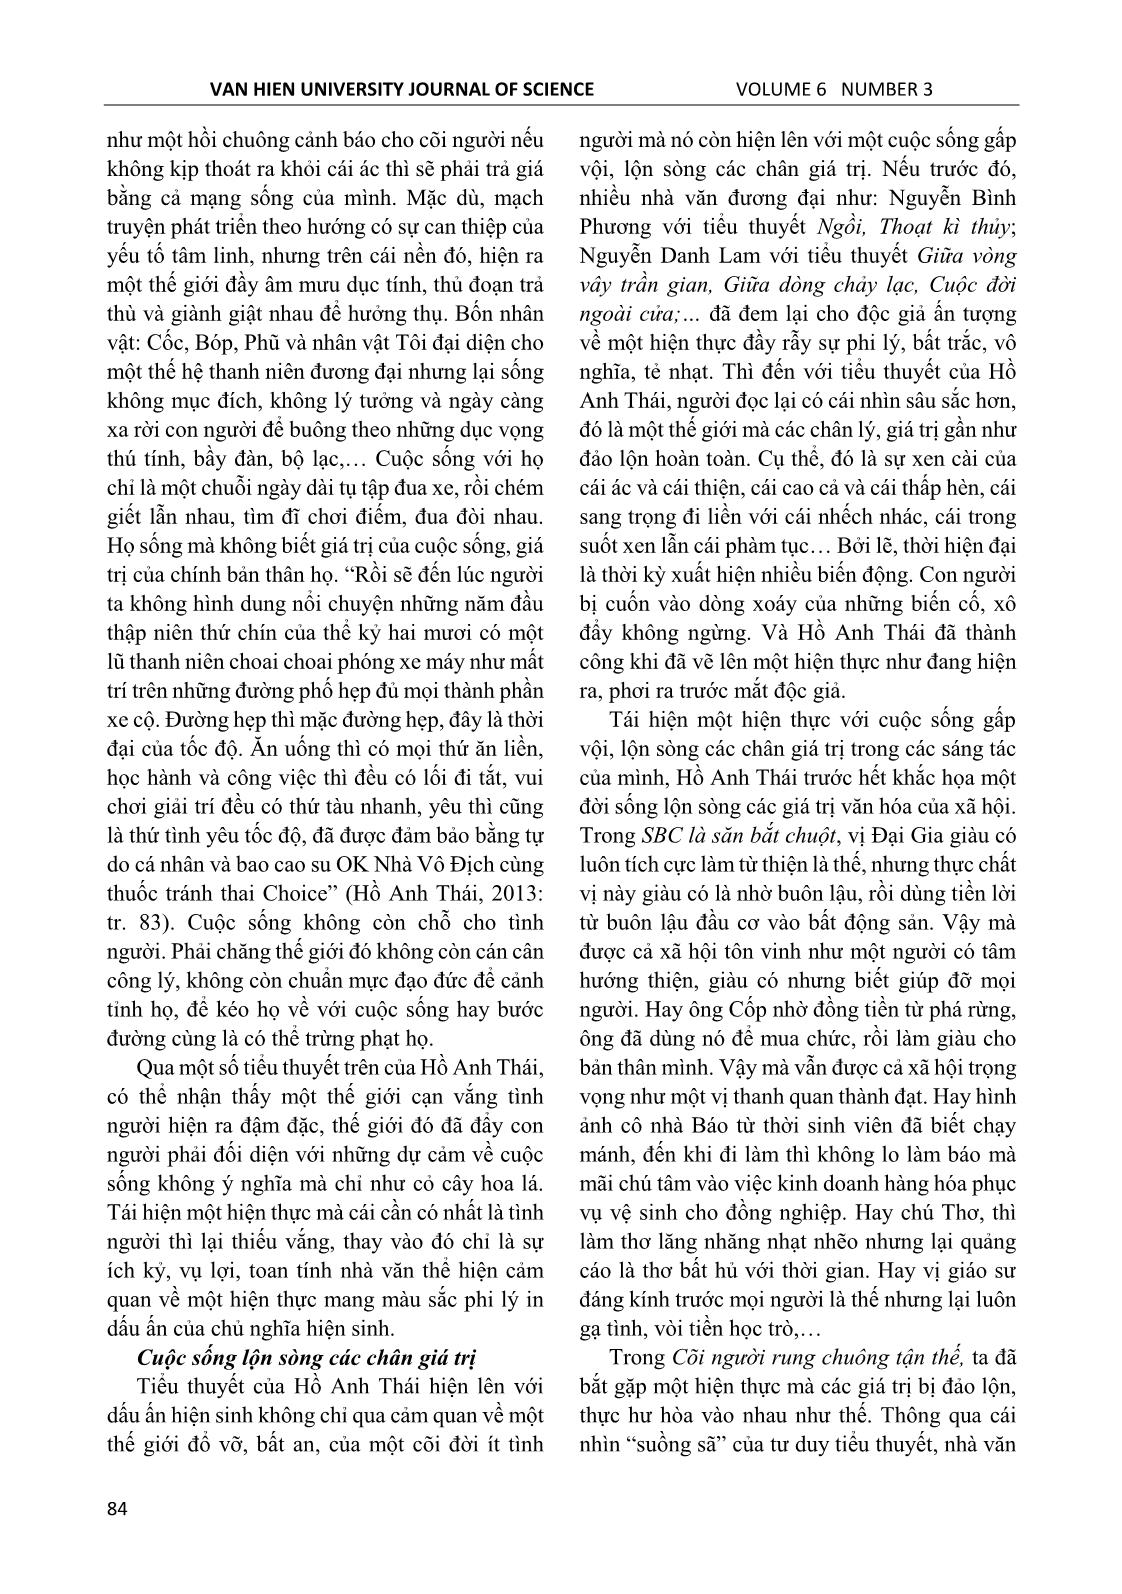 Dấu ấn hiện sinh trong tiểu thuyết Hồ Anh Thái nhìn từ cảm quan hiện thực trang 9